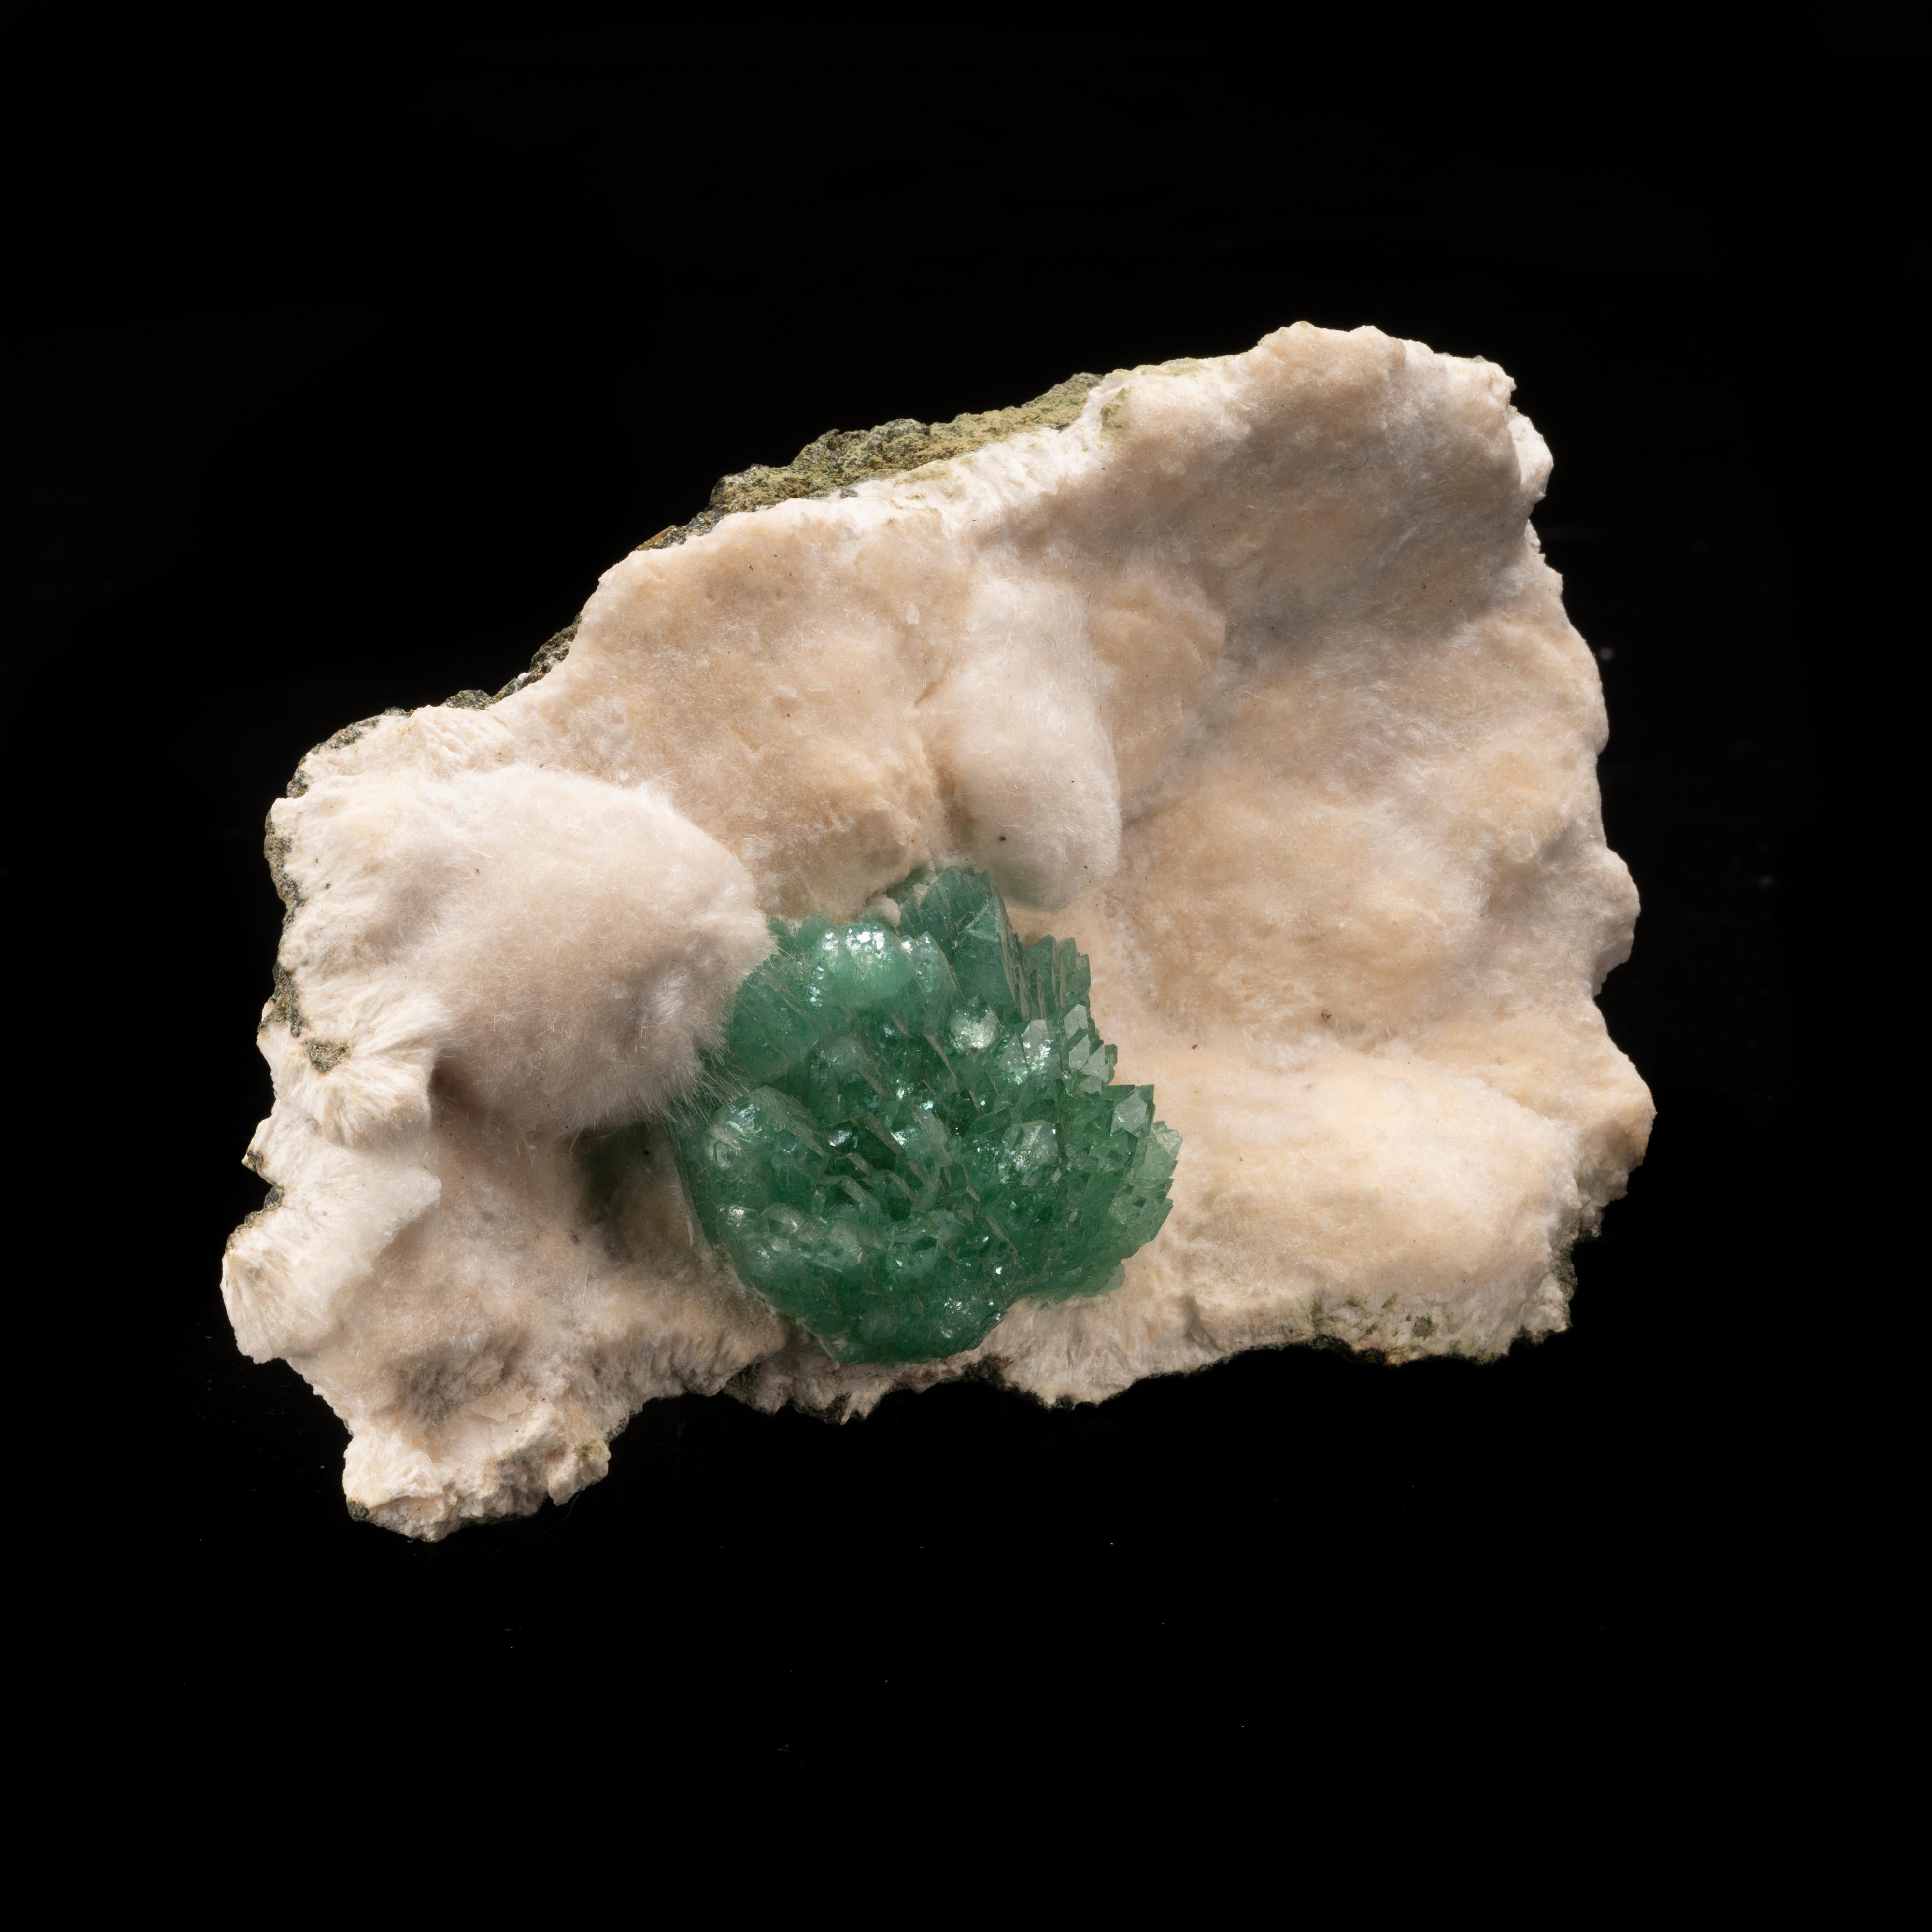 Cette grappe d'apophyllite d'un vert profond, remarquablement arrangée, a une grande présentation naturelle sur un lit doux et lustré d'okenite, un minéral rare souvent associé aux minéraux zéolitiques. L'okenite a un comportement cristallin